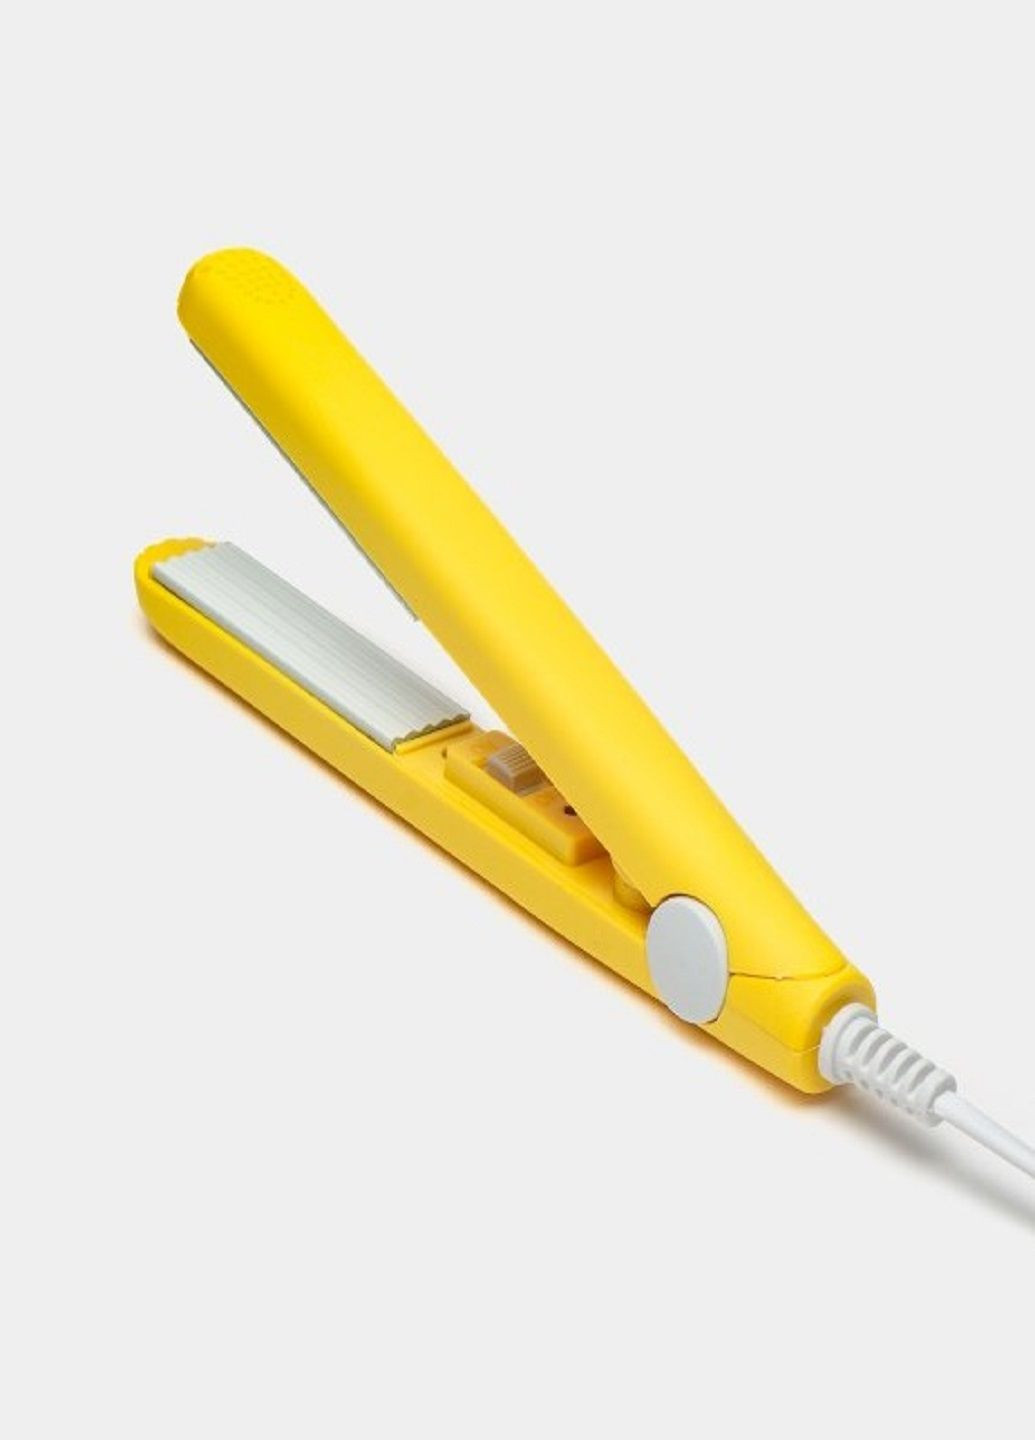 Компактна міні плойка гофре Modern GV 118 для волосся дорожня плойка жовта VTech (291018648)